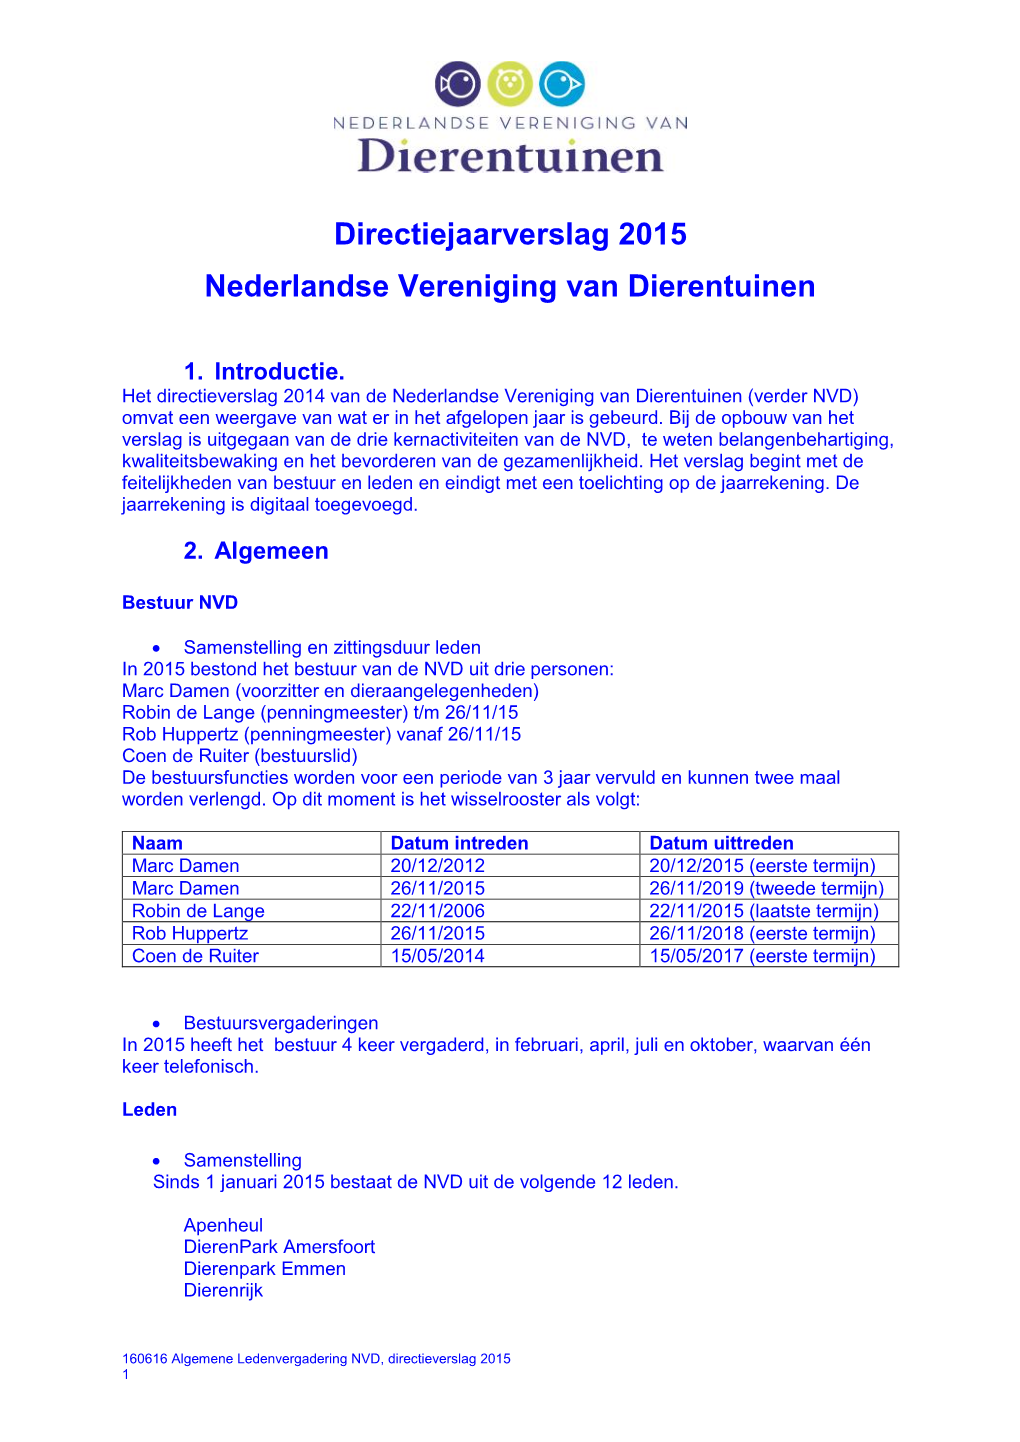 Directiejaarverslag 2015 Nederlandse Vereniging Van Dierentuinen